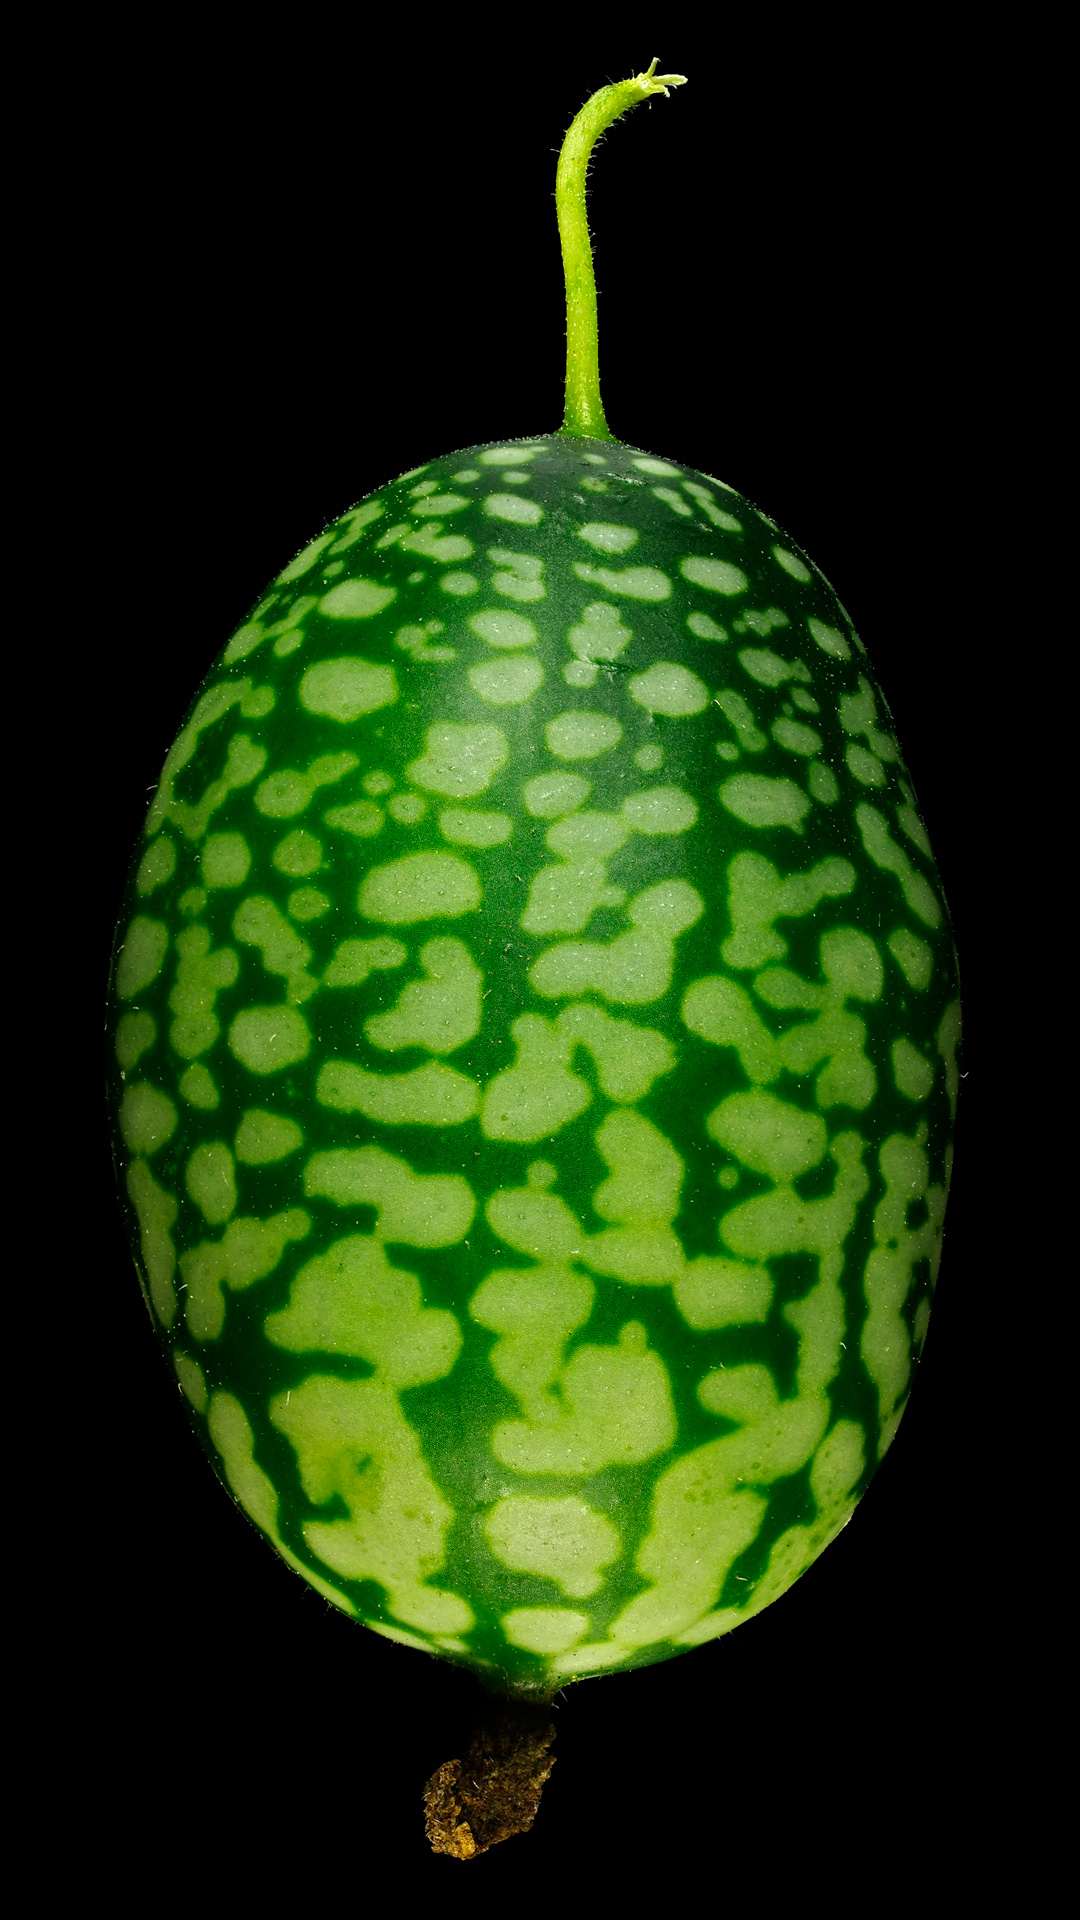 Mouse melon: Melothria scabra